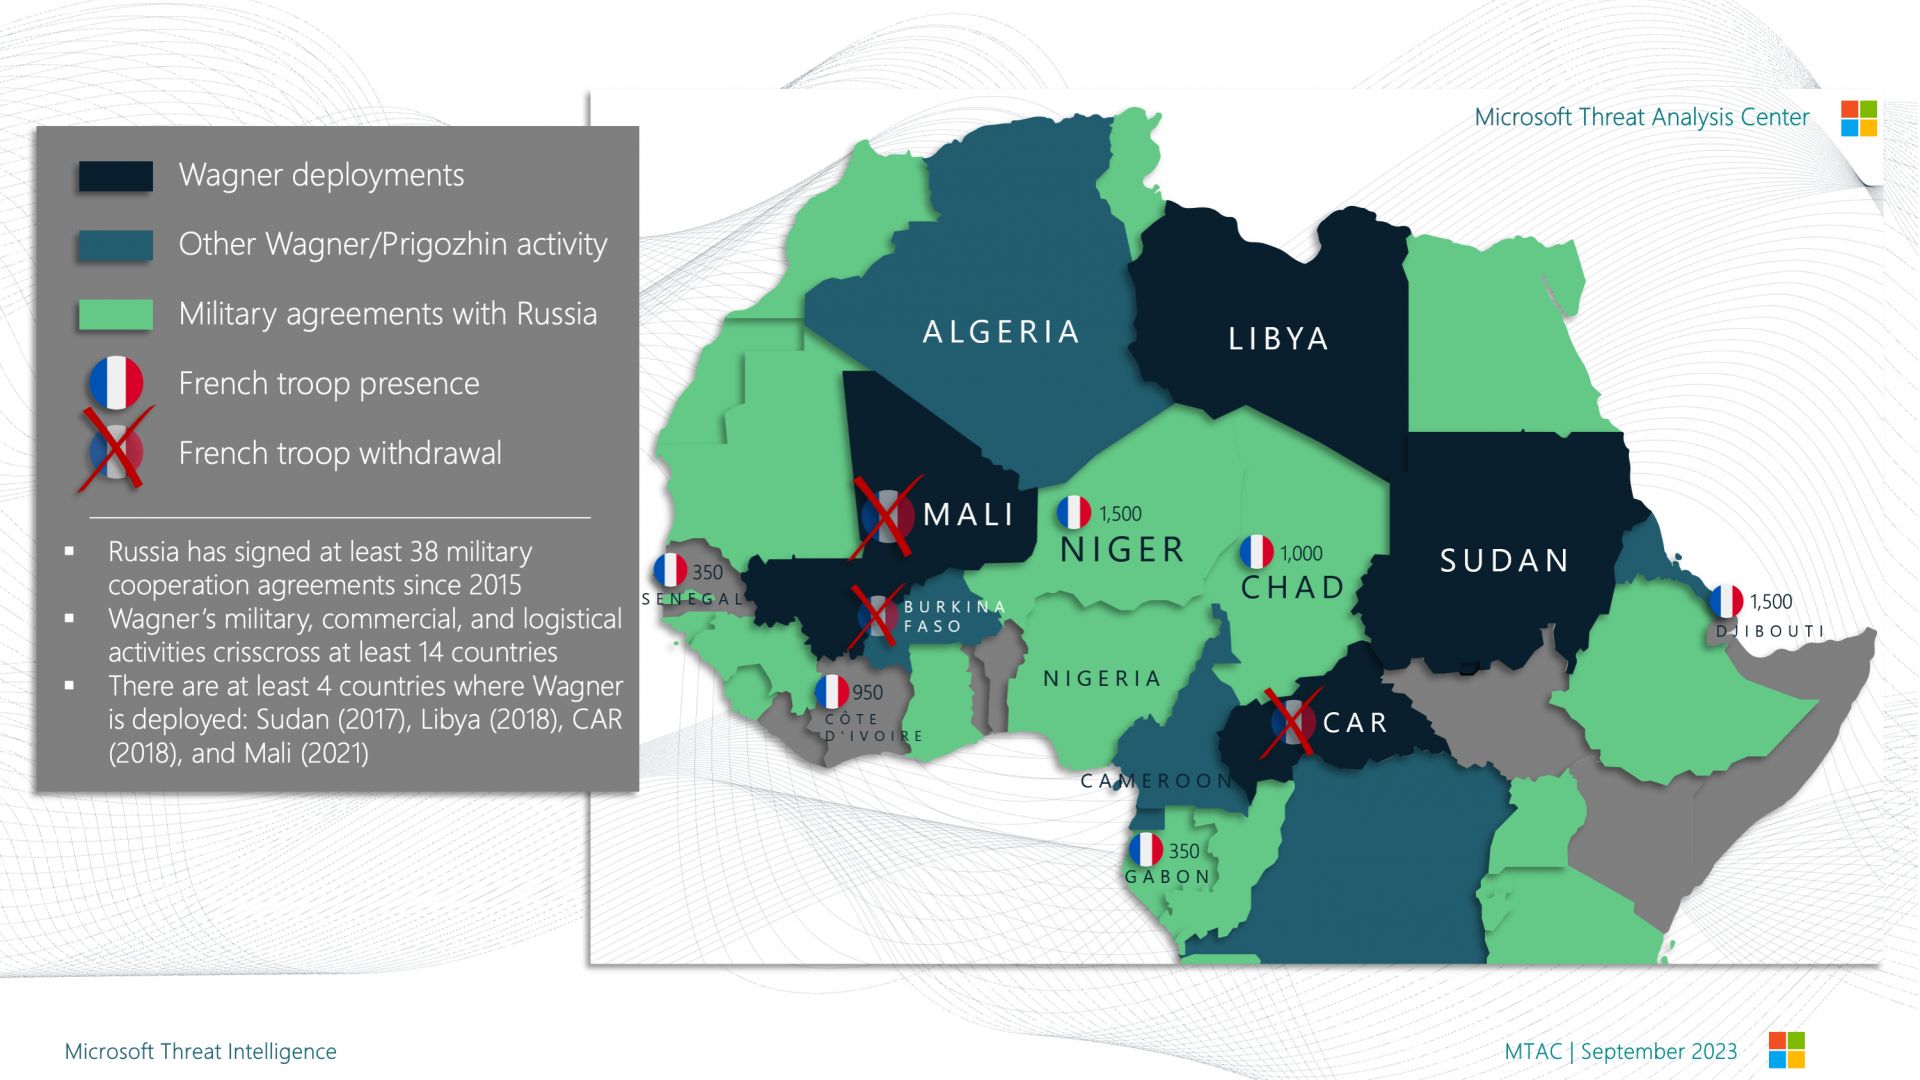 Karte von Afrika, die Russlands Einfluss auf Länder zeigt